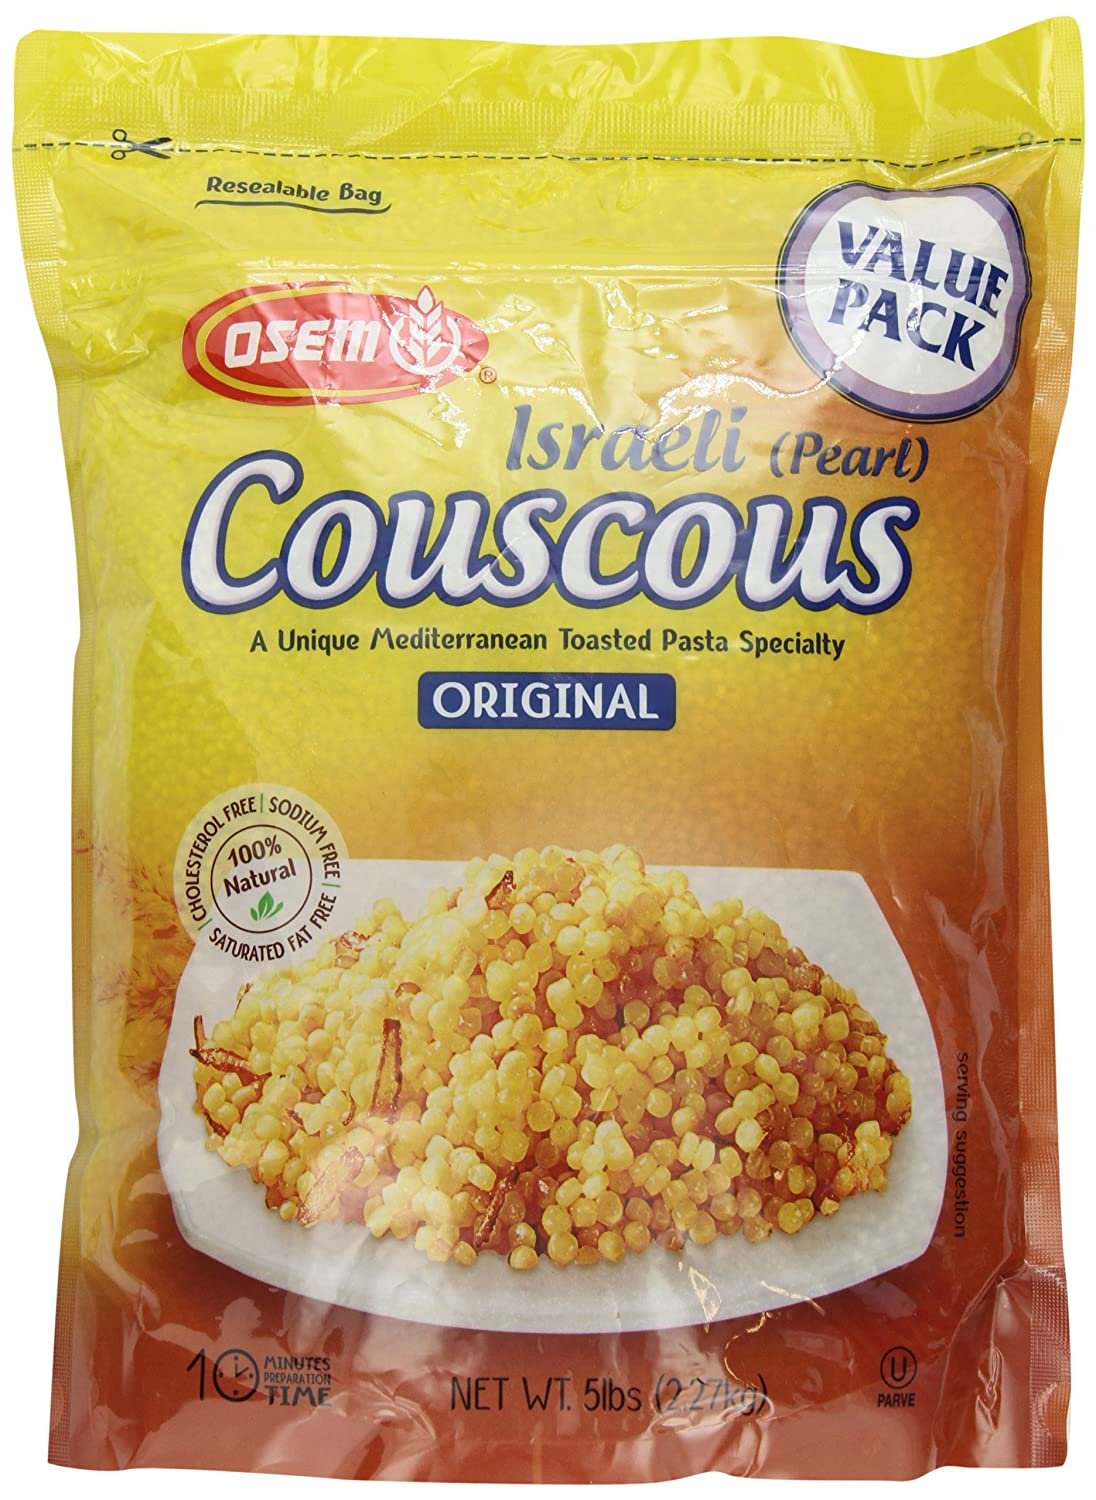 The Original Israeli Couscous by Osem Pearl Couscous 5lb/80oz Resealable Bag